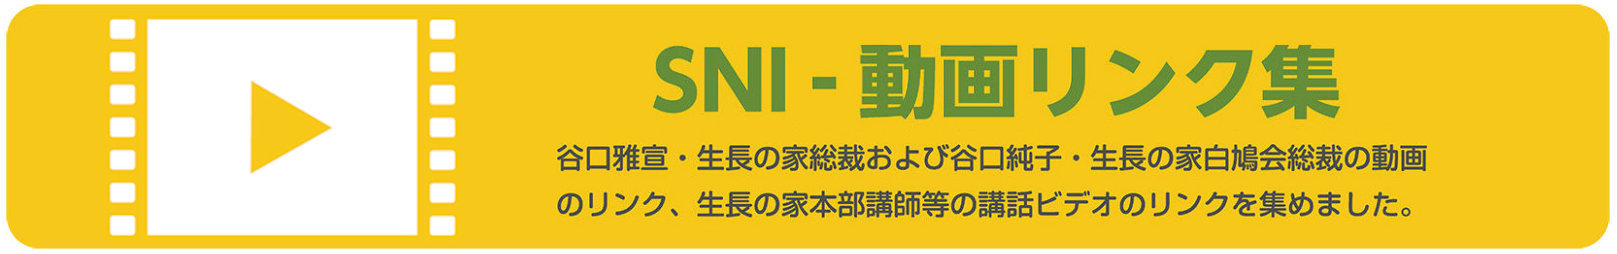 SNI - 動画リンク集　谷口雅宣・生長の家総裁および谷口純子・生長の家白鳩会総裁の動画のリンク、生長の家本部講師等の講話ビデオのリンクを集めました。